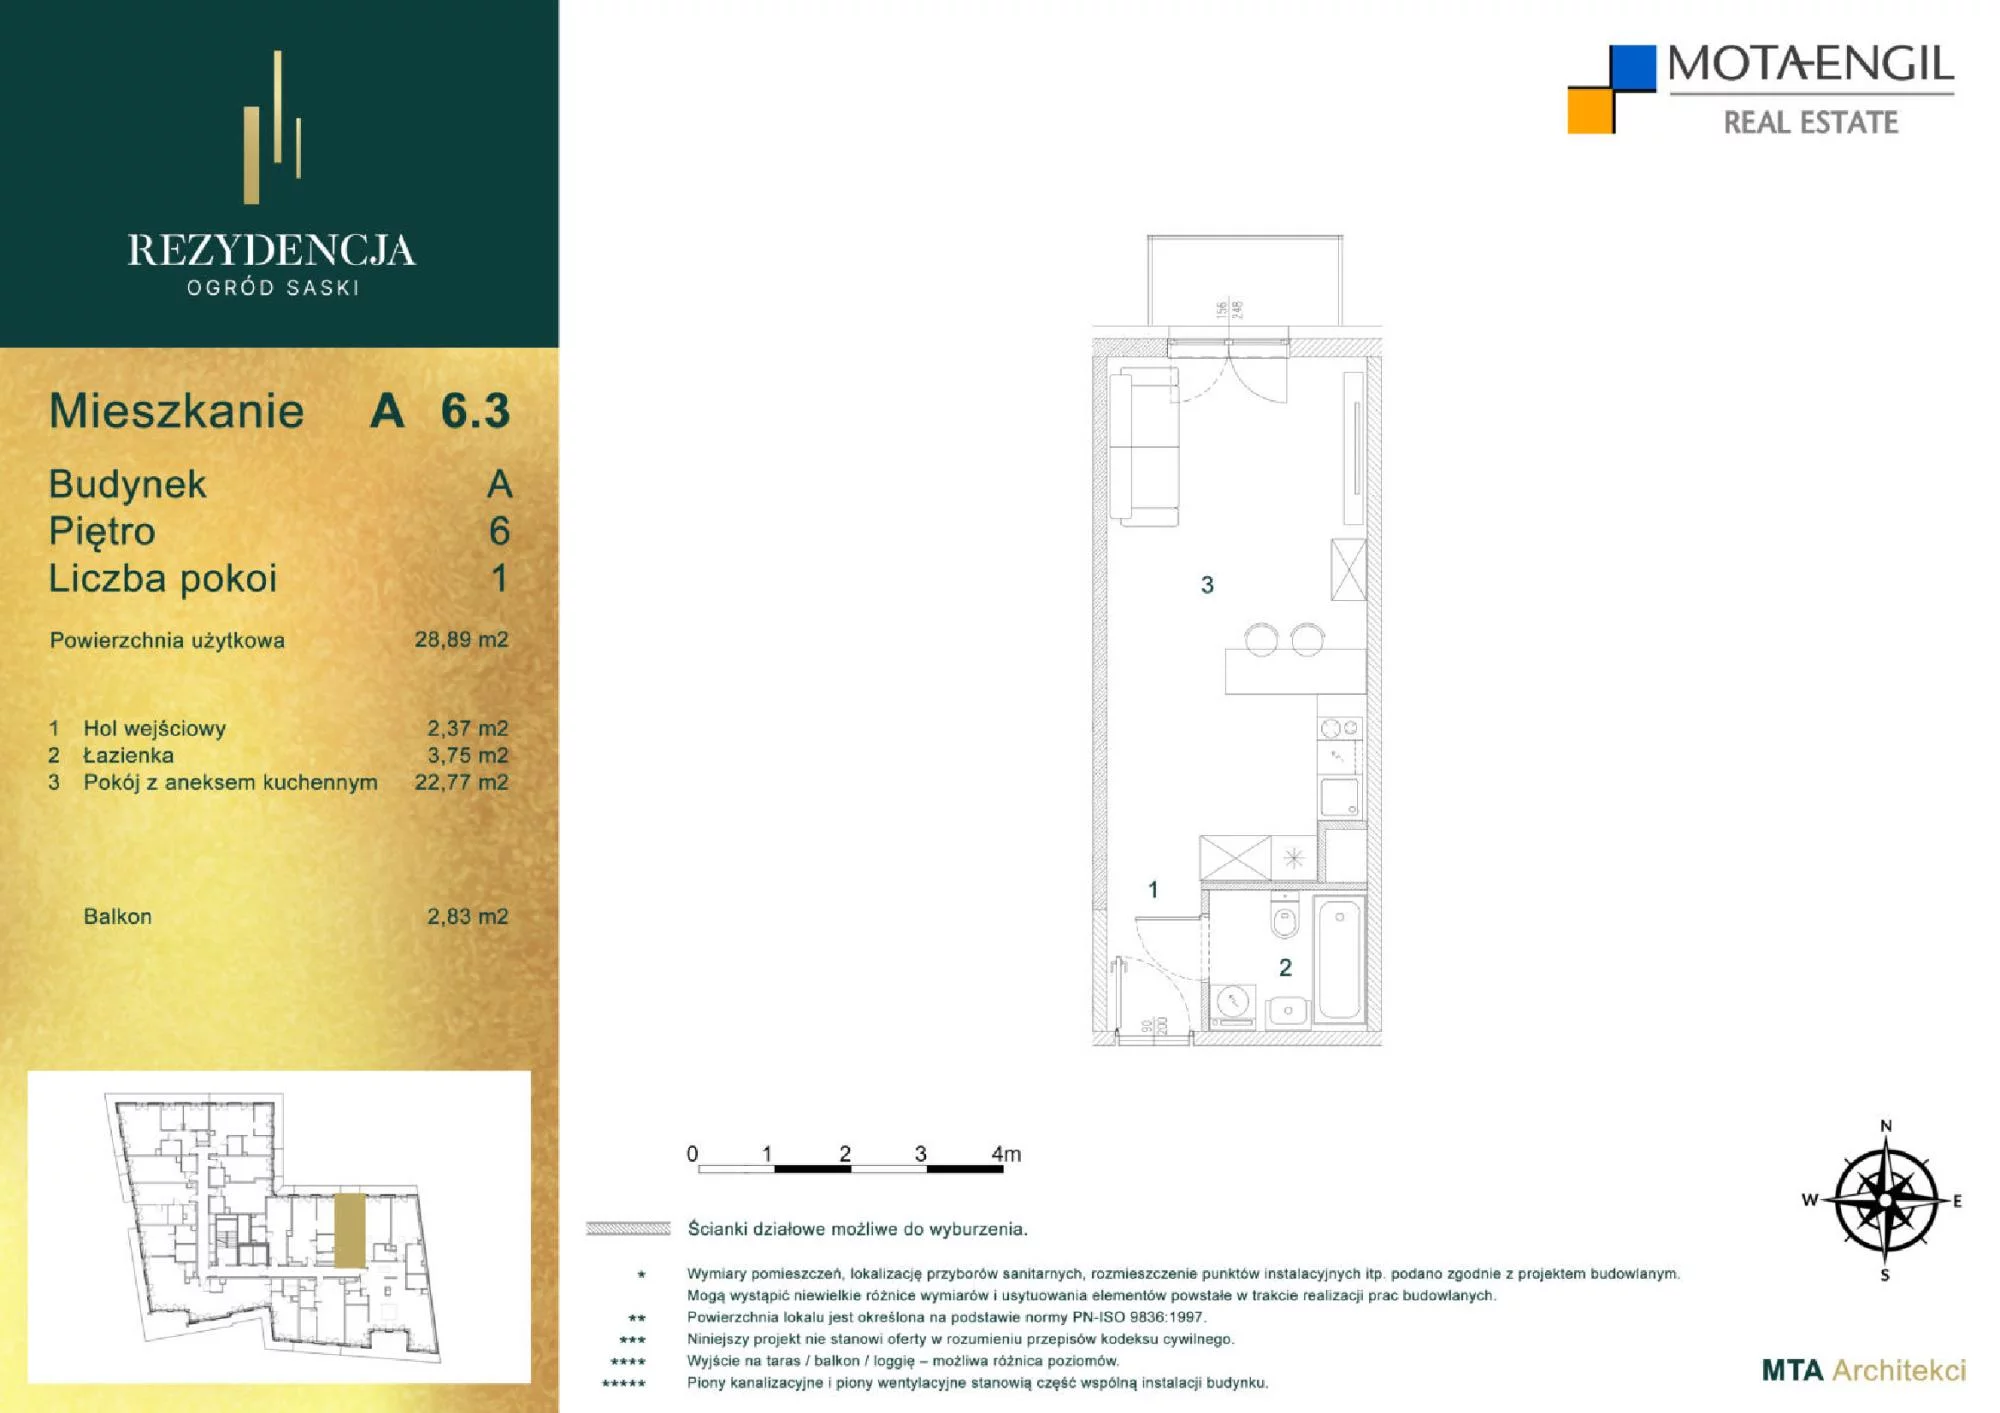 Mieszkanie 28,89 m², piętro 6, oferta nr A6.3, Rezydencja Ogród Saski, Lublin, Wieniawa, ul. Jasna 7, 7A